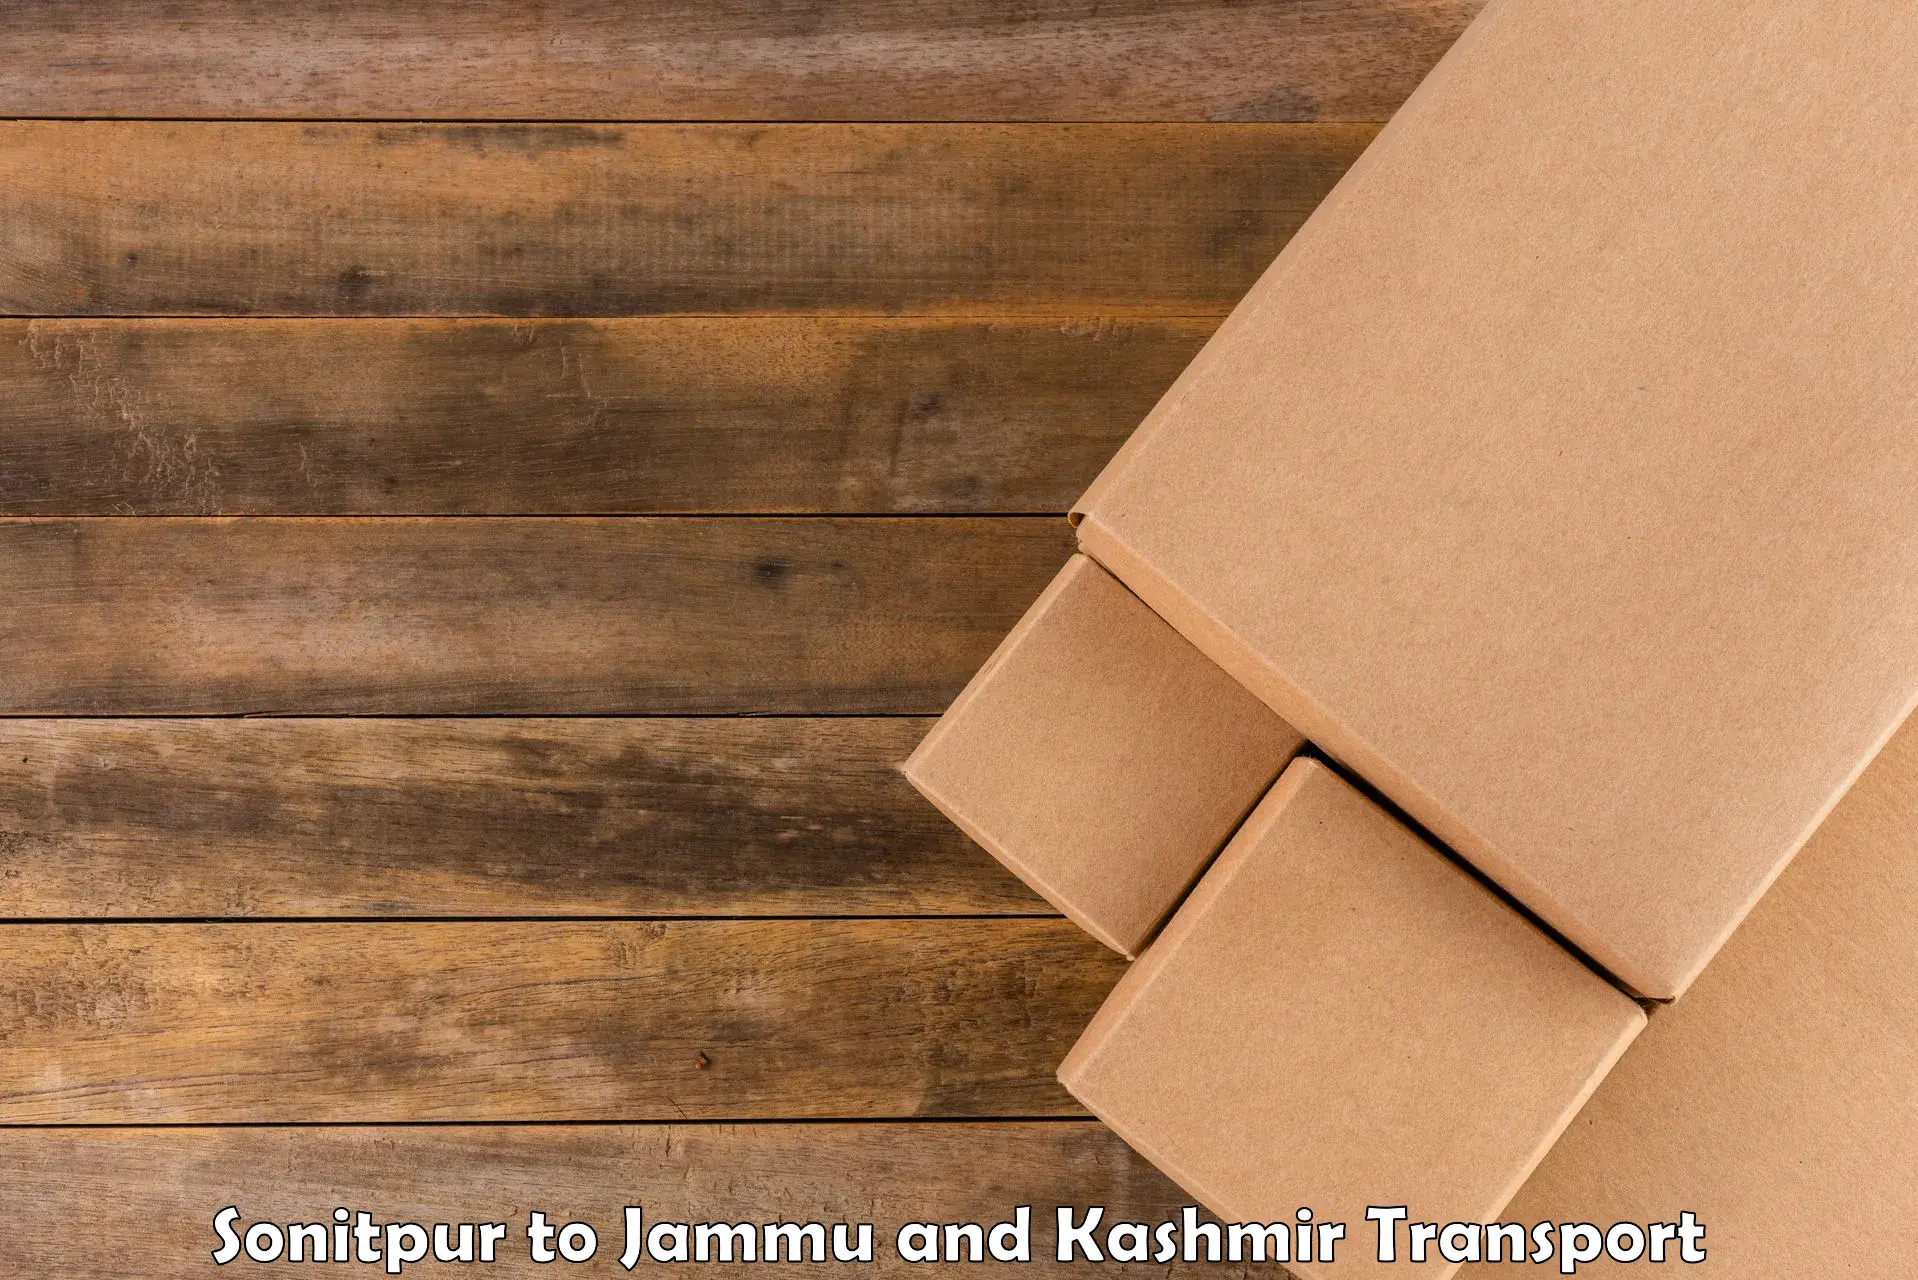 Shipping partner Sonitpur to Srinagar Kashmir